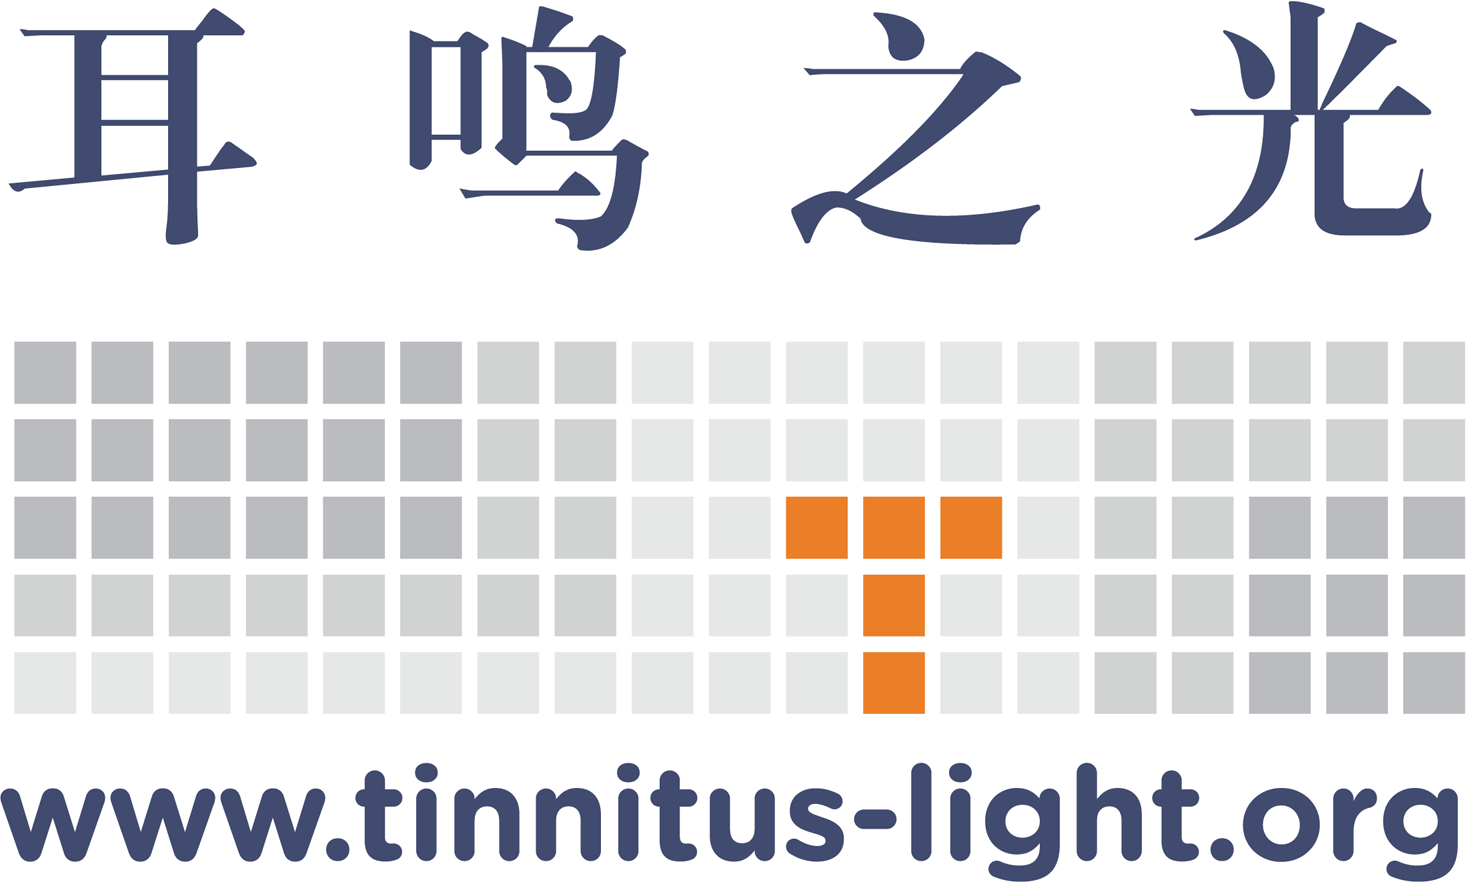 Tinnitus-light